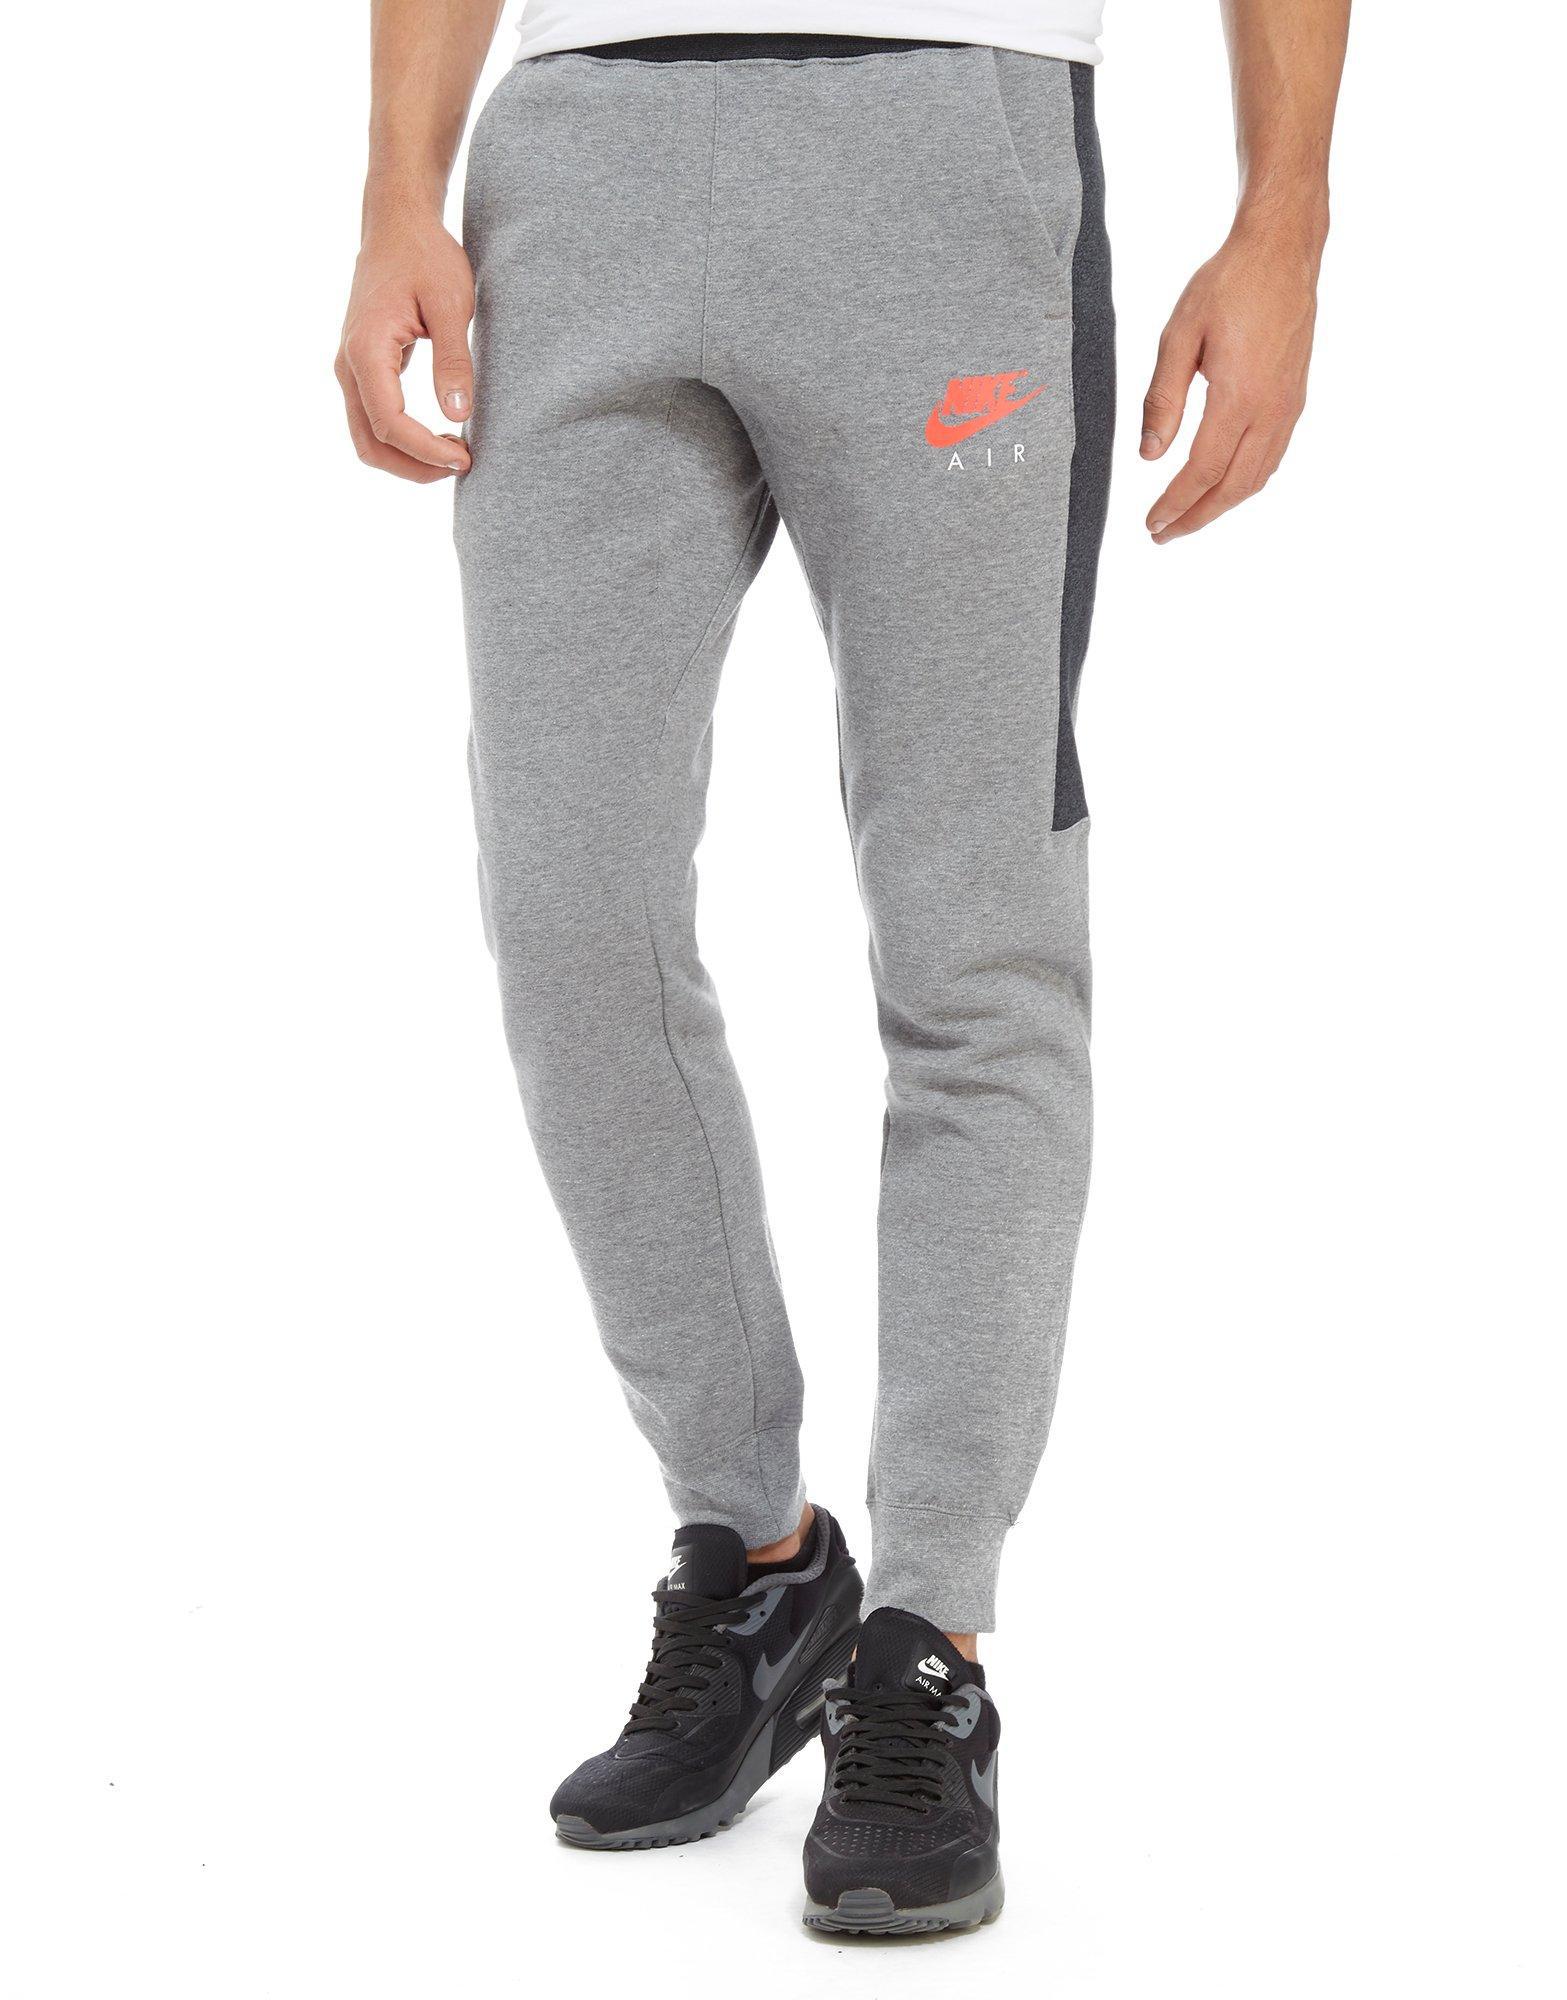 Nike Air Fleece Pants in Grey/Red (Gray 